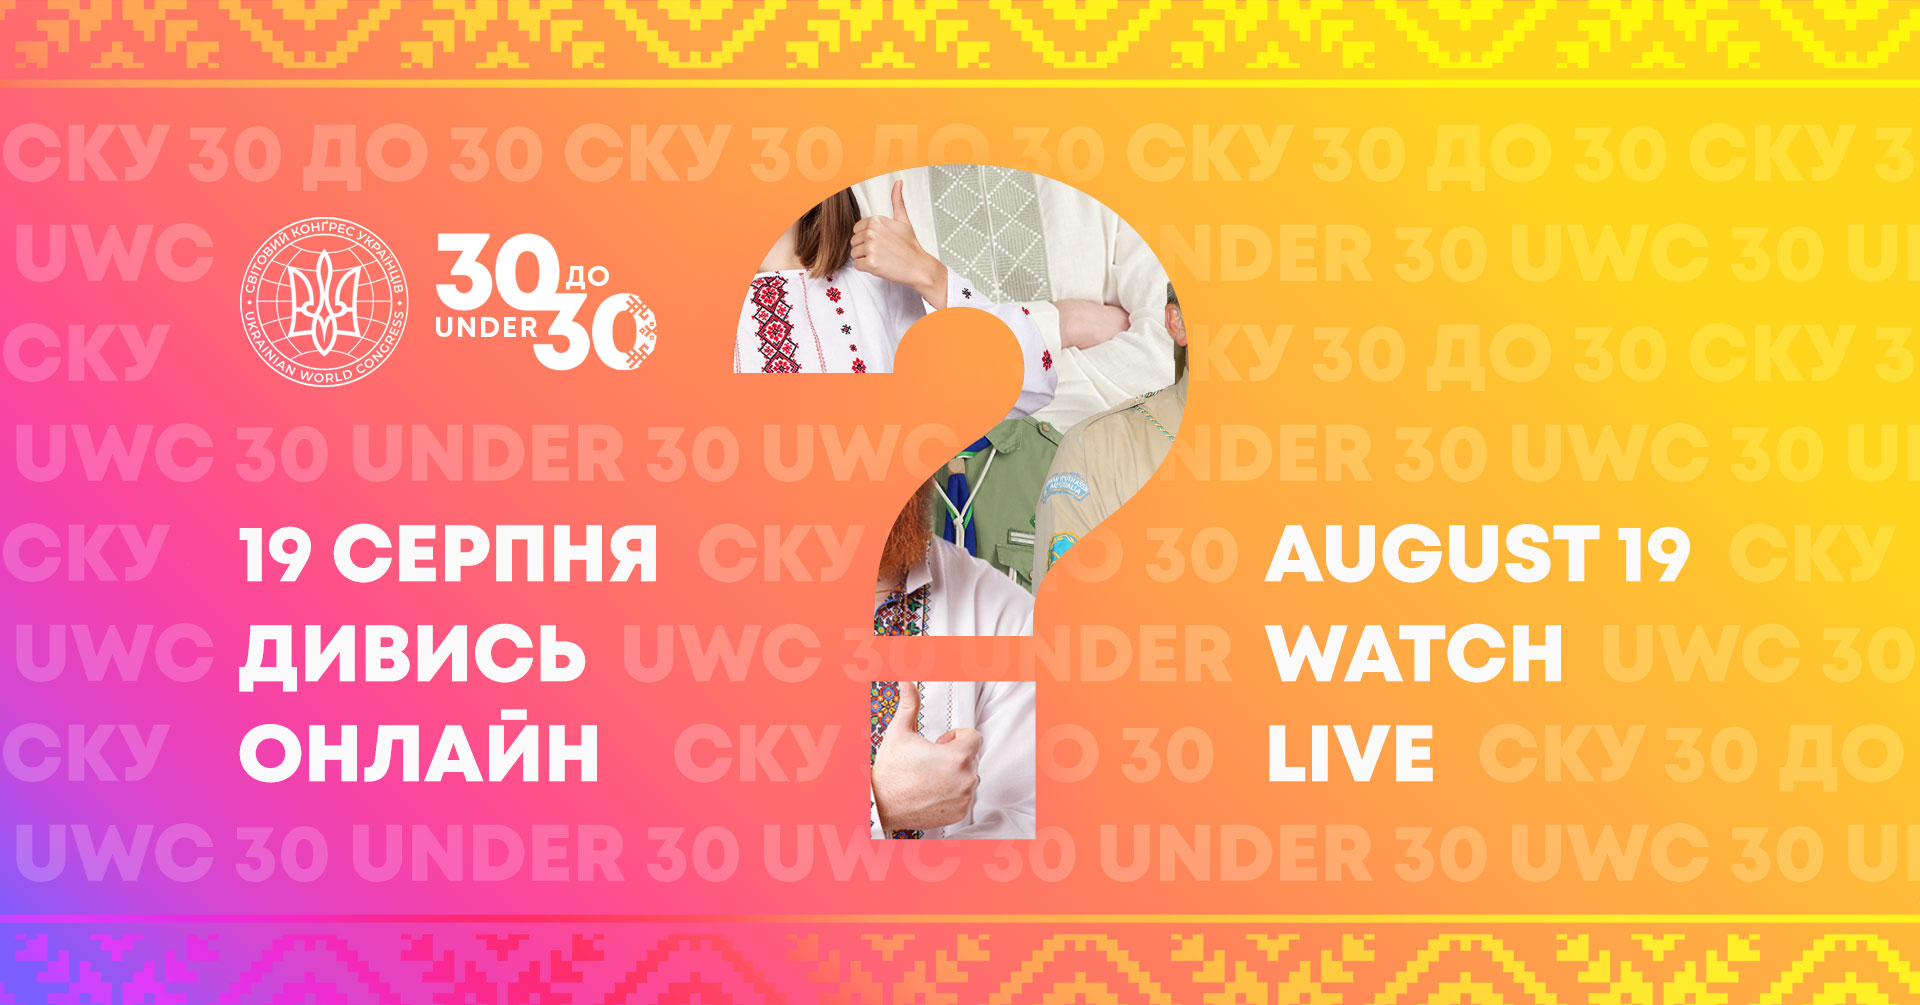 Фінал молодіжної ініціативи “СКУ 30 до 30” відбудеться 19 серпня